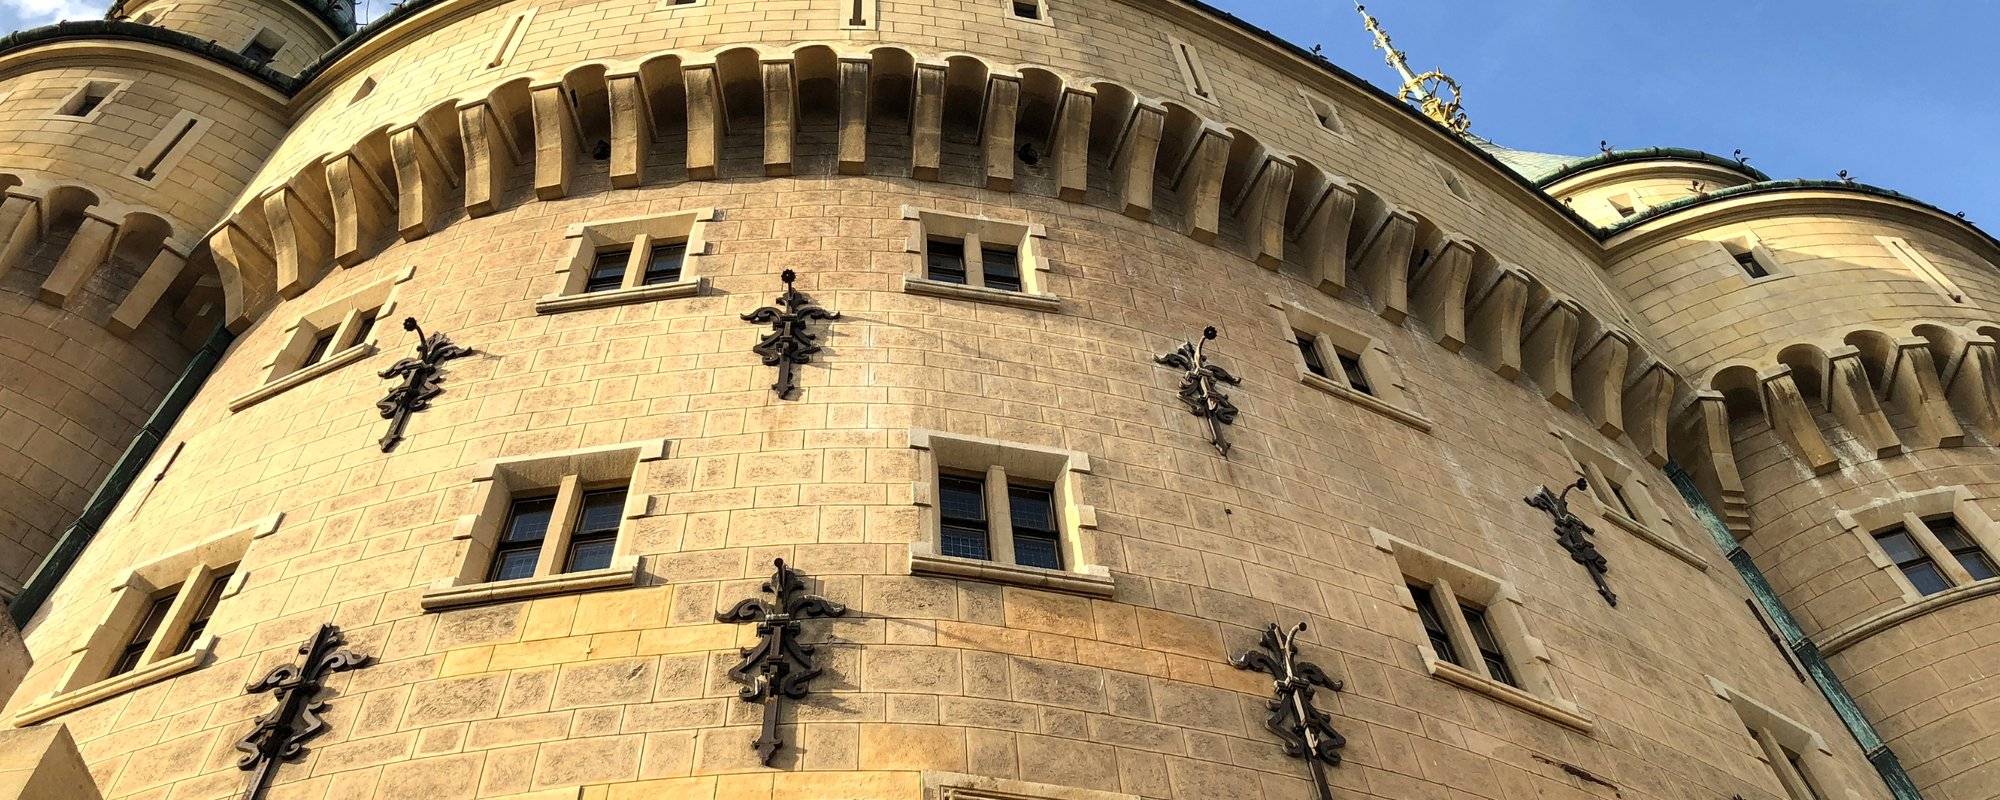 Explore Bojnice Castle Architecture with Travelgirl